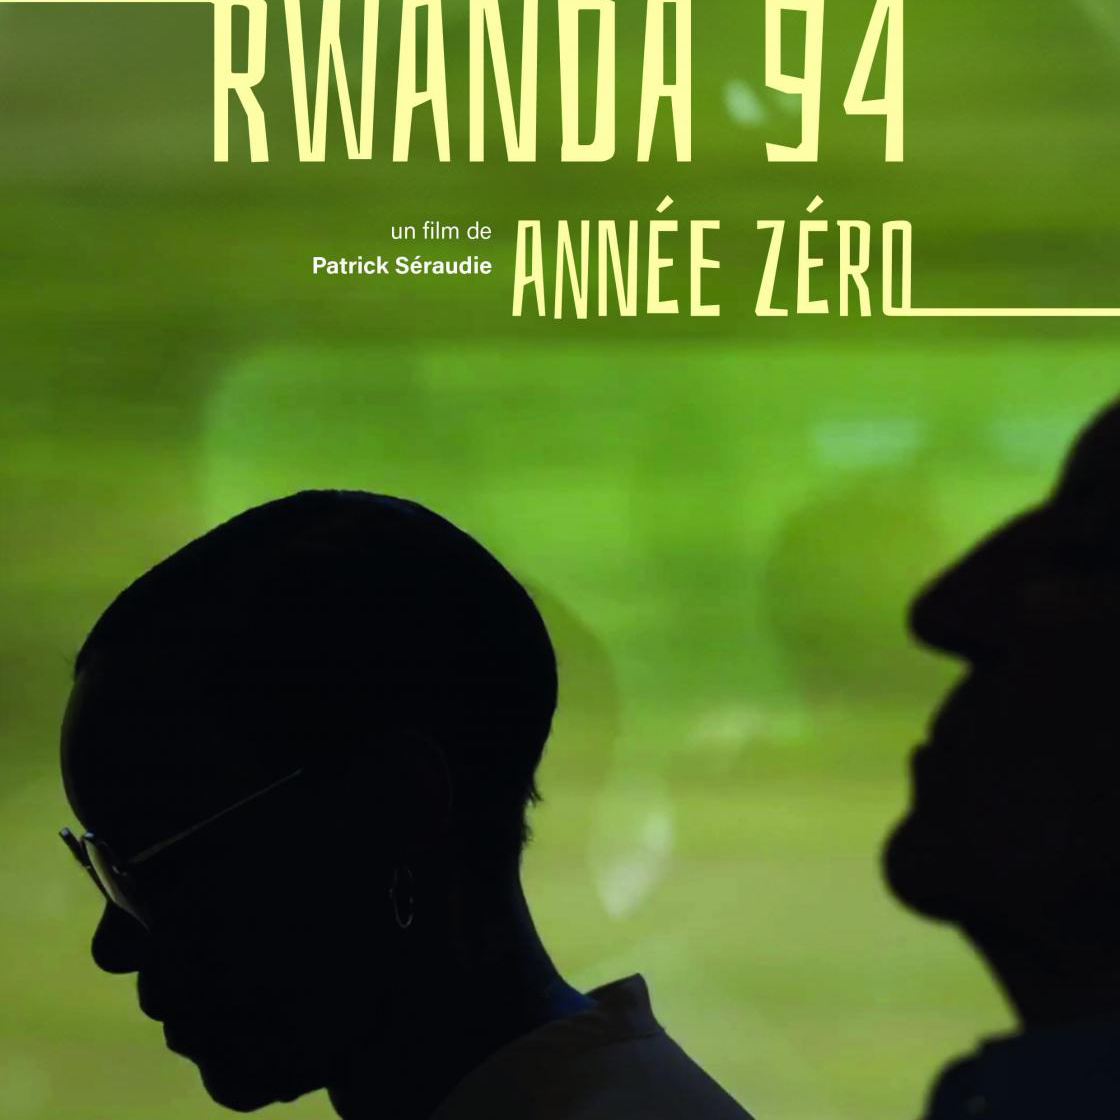 Avant-première régionale : Rwanda 94, année zéro